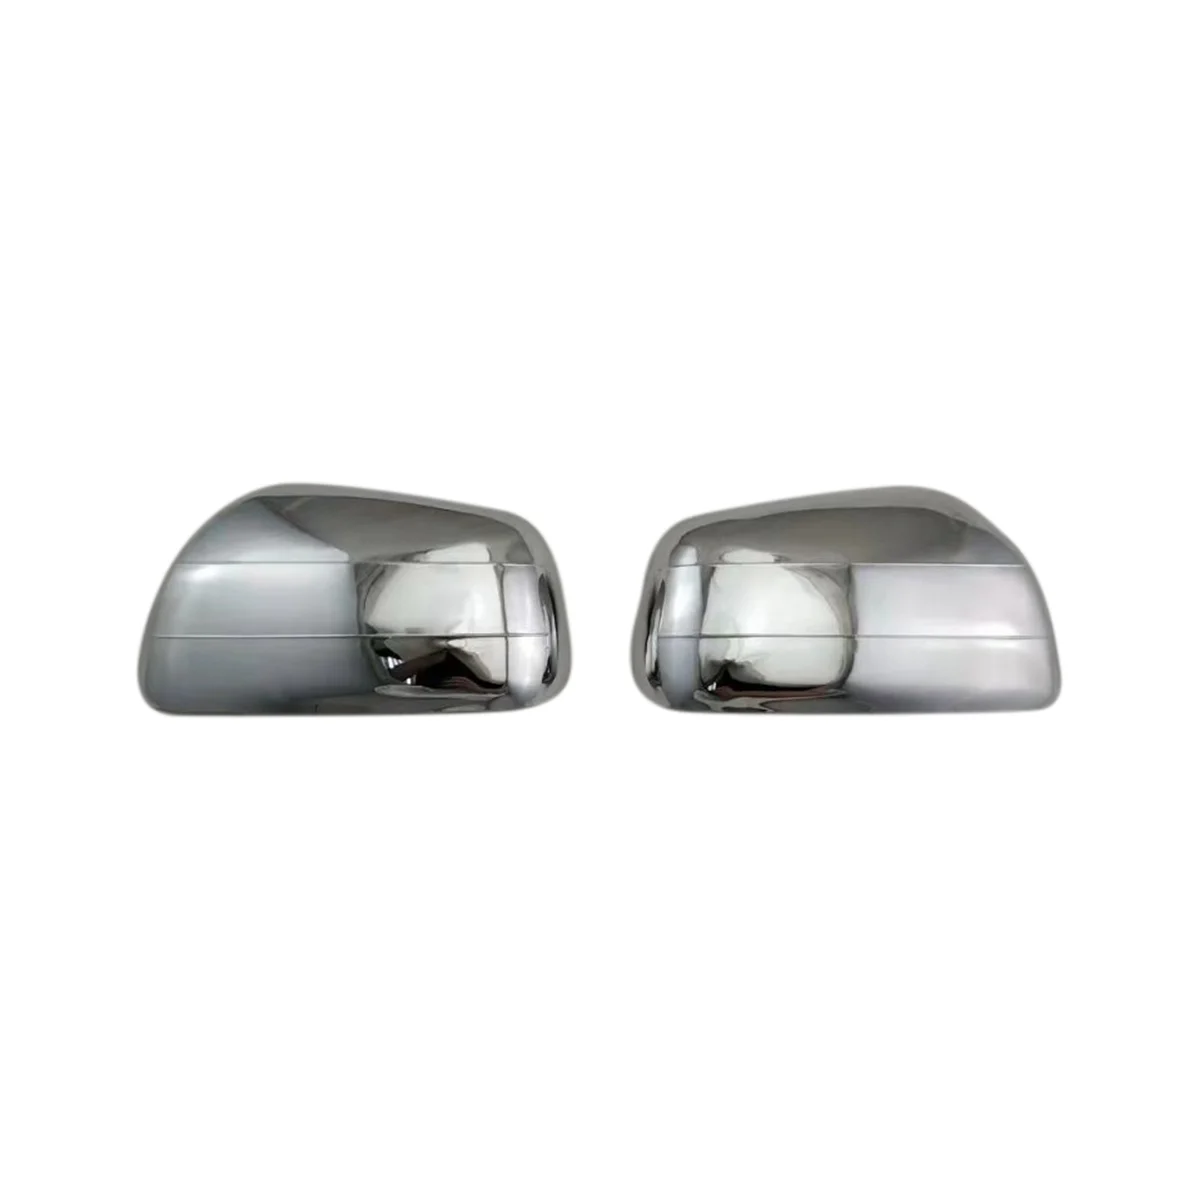 

Автомобильный хромированный серебристый чехол для бокового зеркала заднего вида, отделка, чехлы для заднего зеркала, оболочка для Toyota Corolla Space o 2001-2007